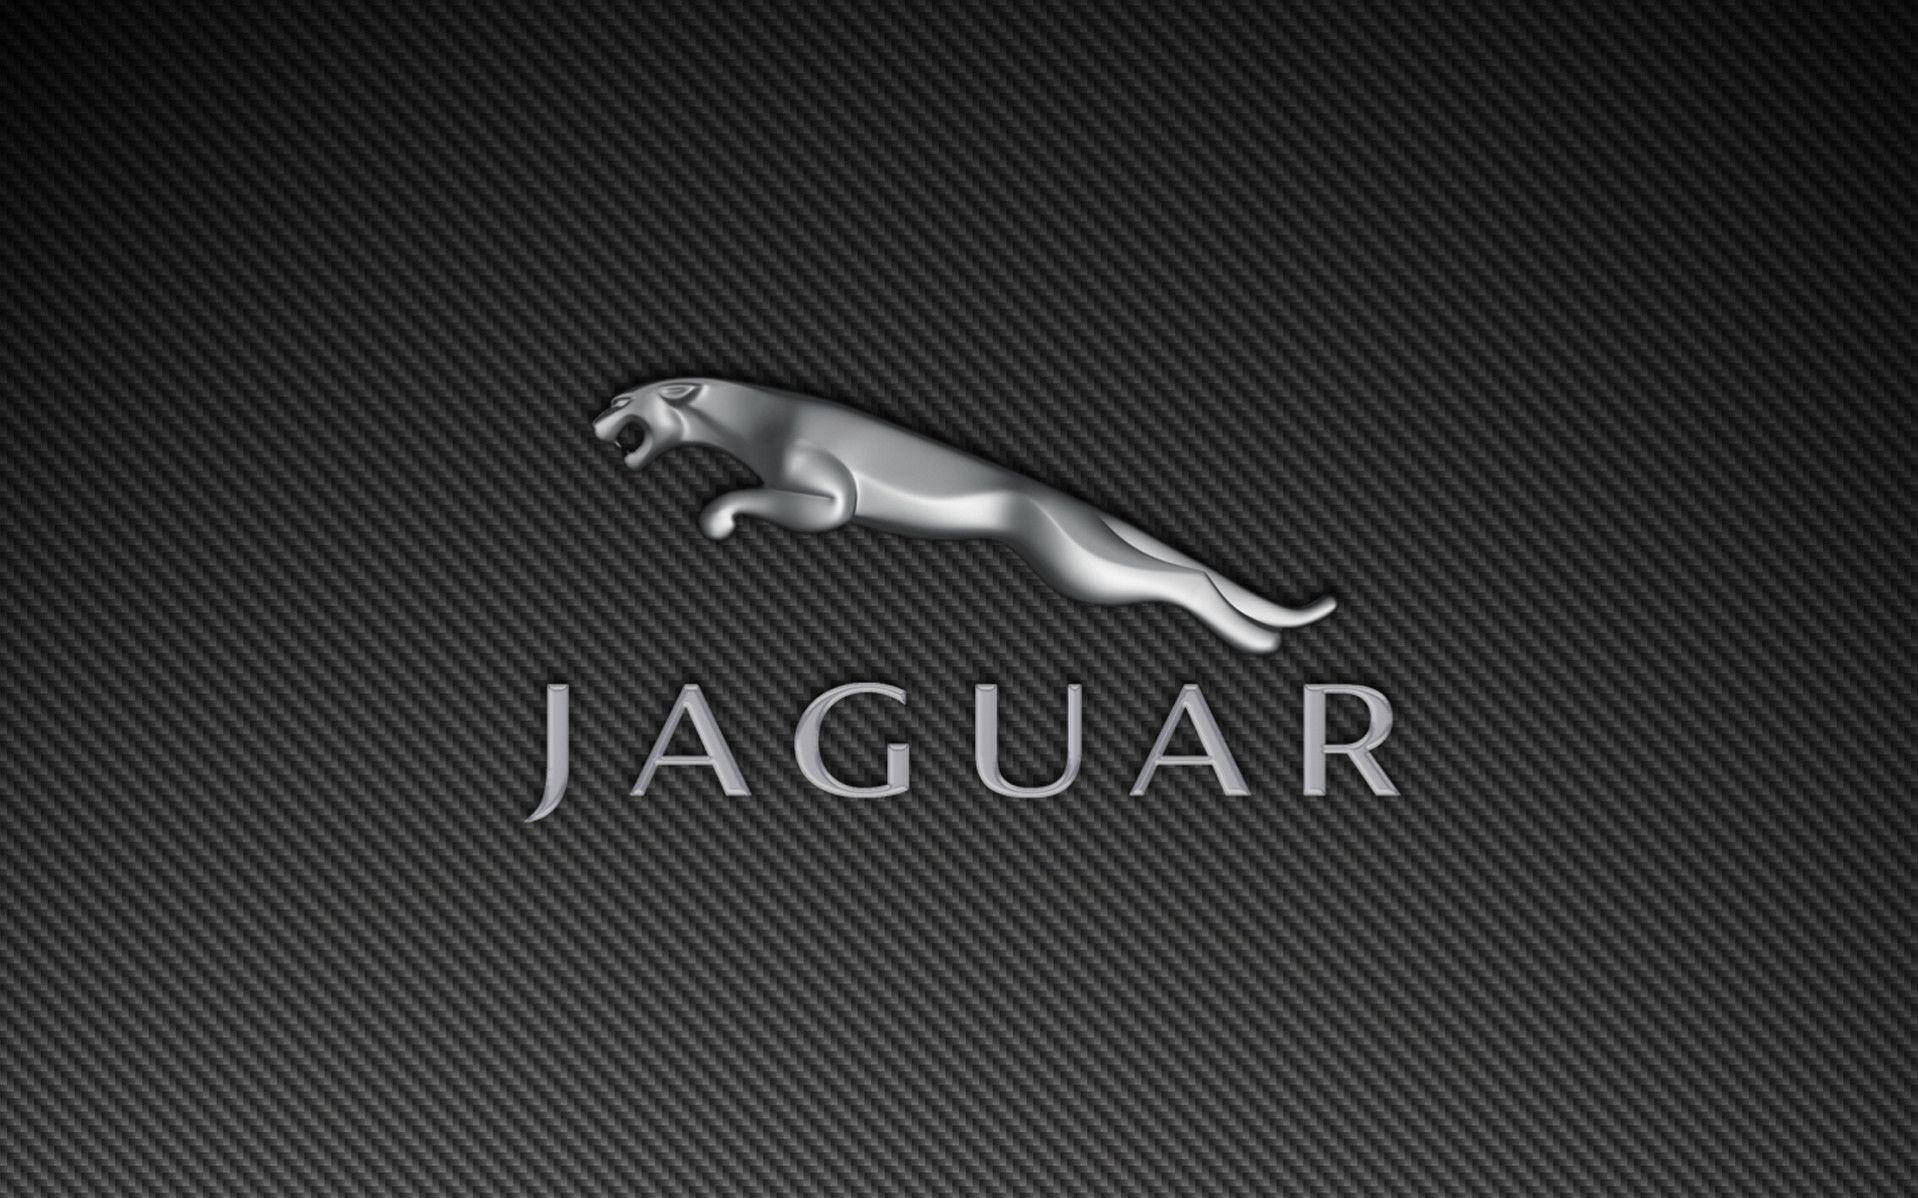 Jaguarlogo Für Automarken Wallpaper